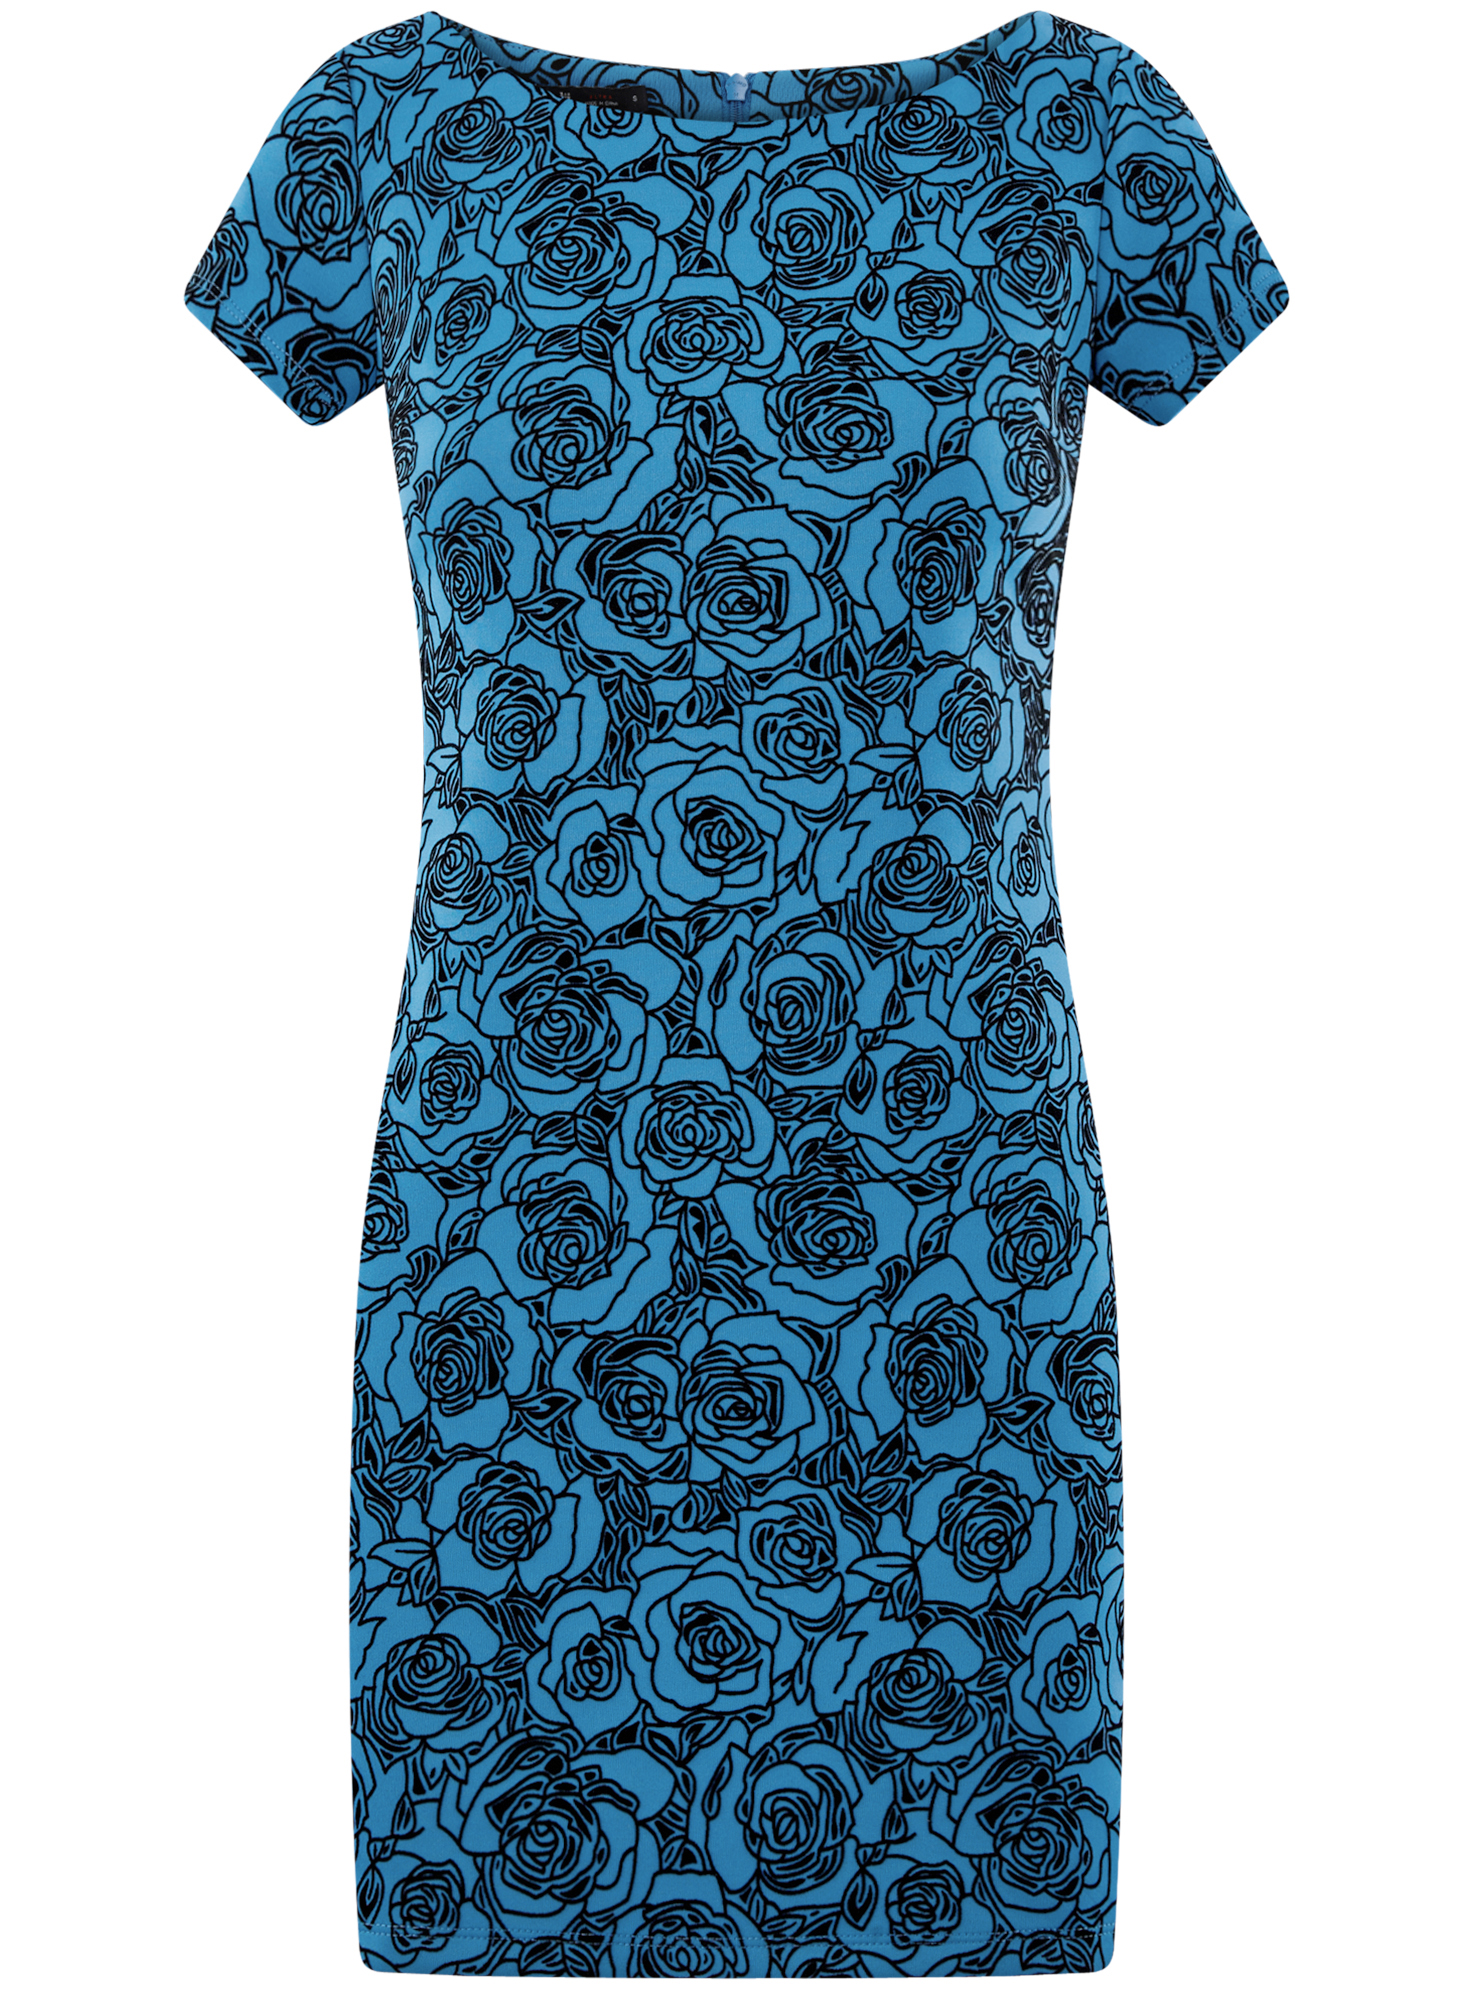 Платье женское oodji 14001117-23 синее XS